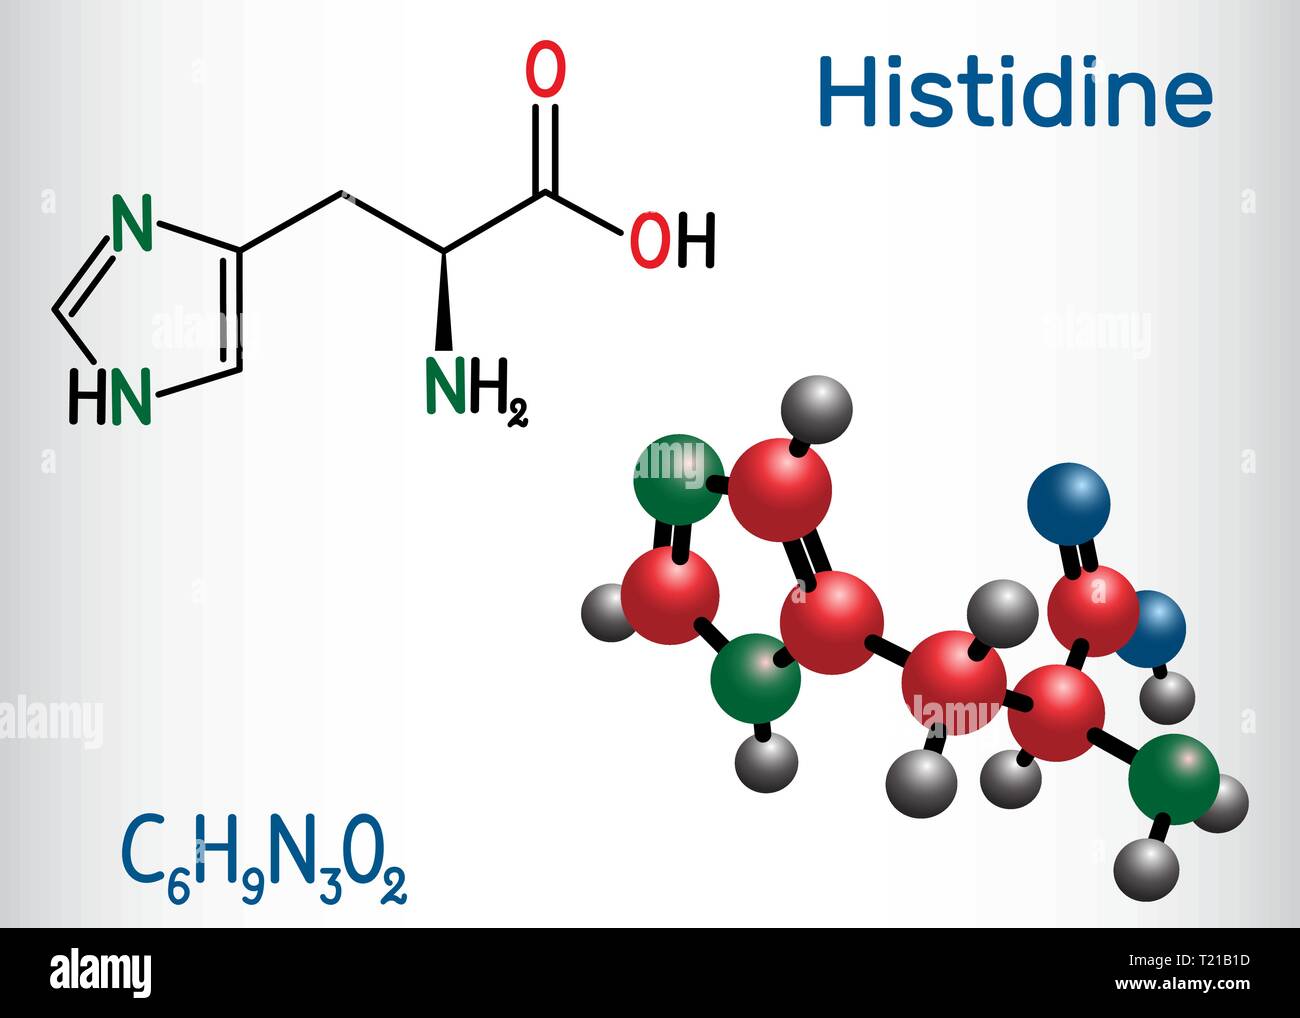 L'histidine histidine (L- , SA, H) molécule d'acide aminé. Il est utilisé dans la biosynthèse des protéines. Formule chimique structurale et molécule modèle. Vec Illustration de Vecteur